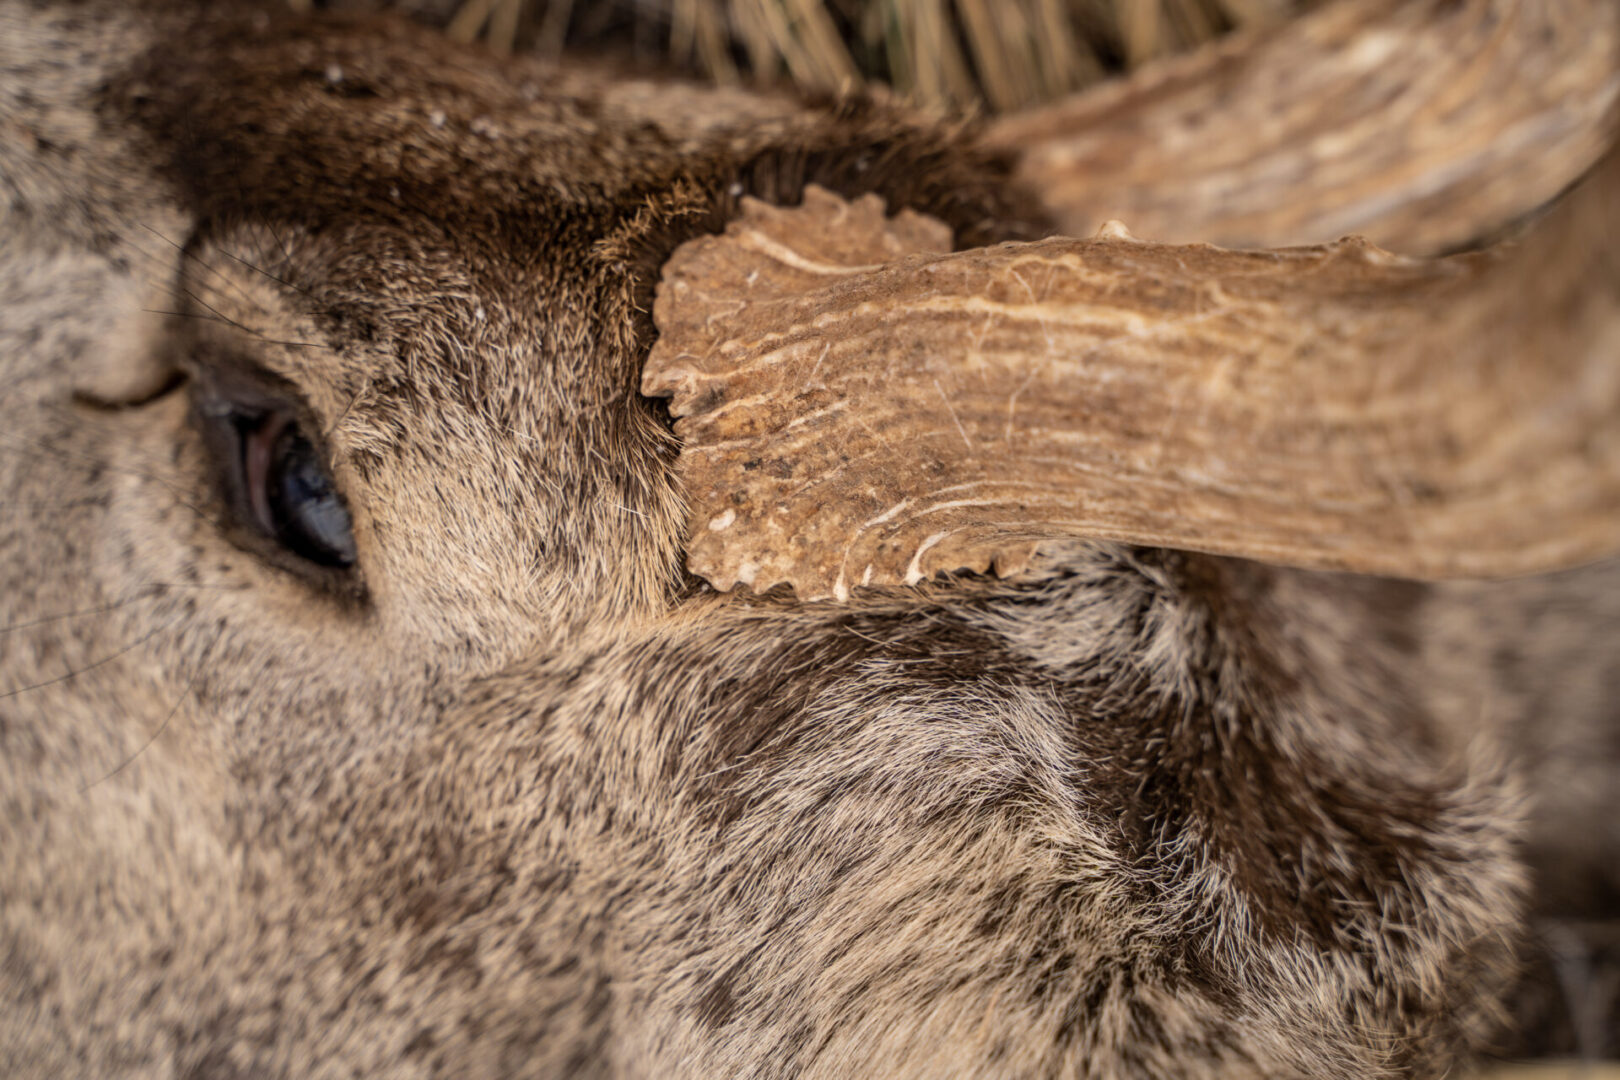 close up of an elk’s face